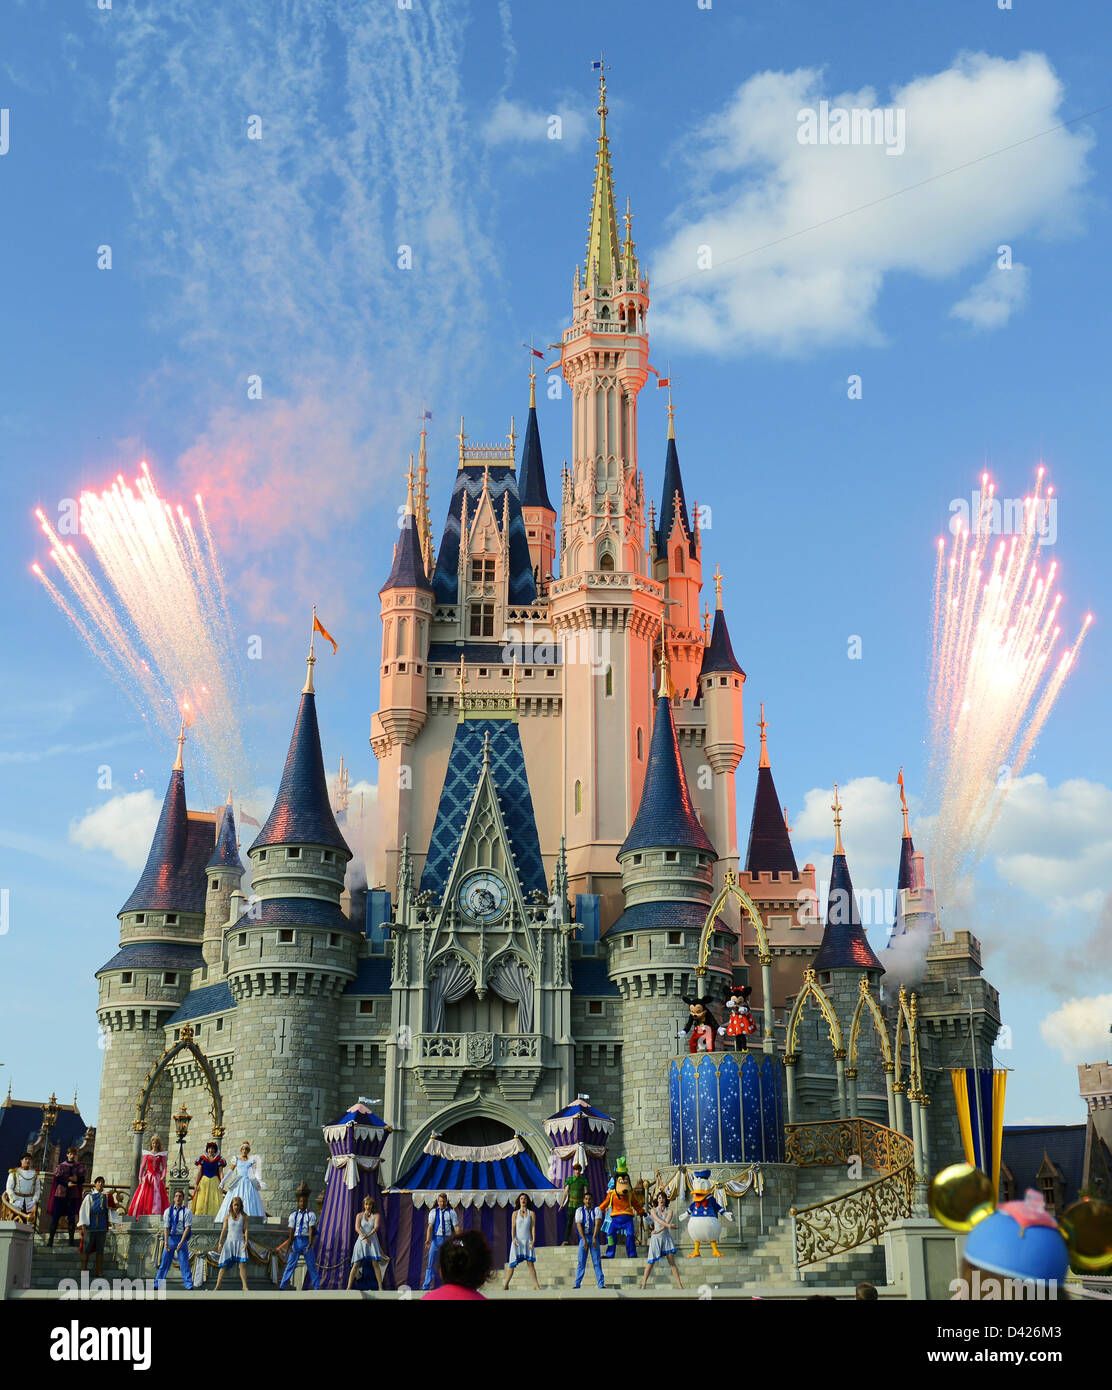 Fuochi d'artificio spegnersi al finale di uno spettacolo di danza con Micky, Minnie e altri personaggi a Disney World il castello di Orlando. Foto Stock